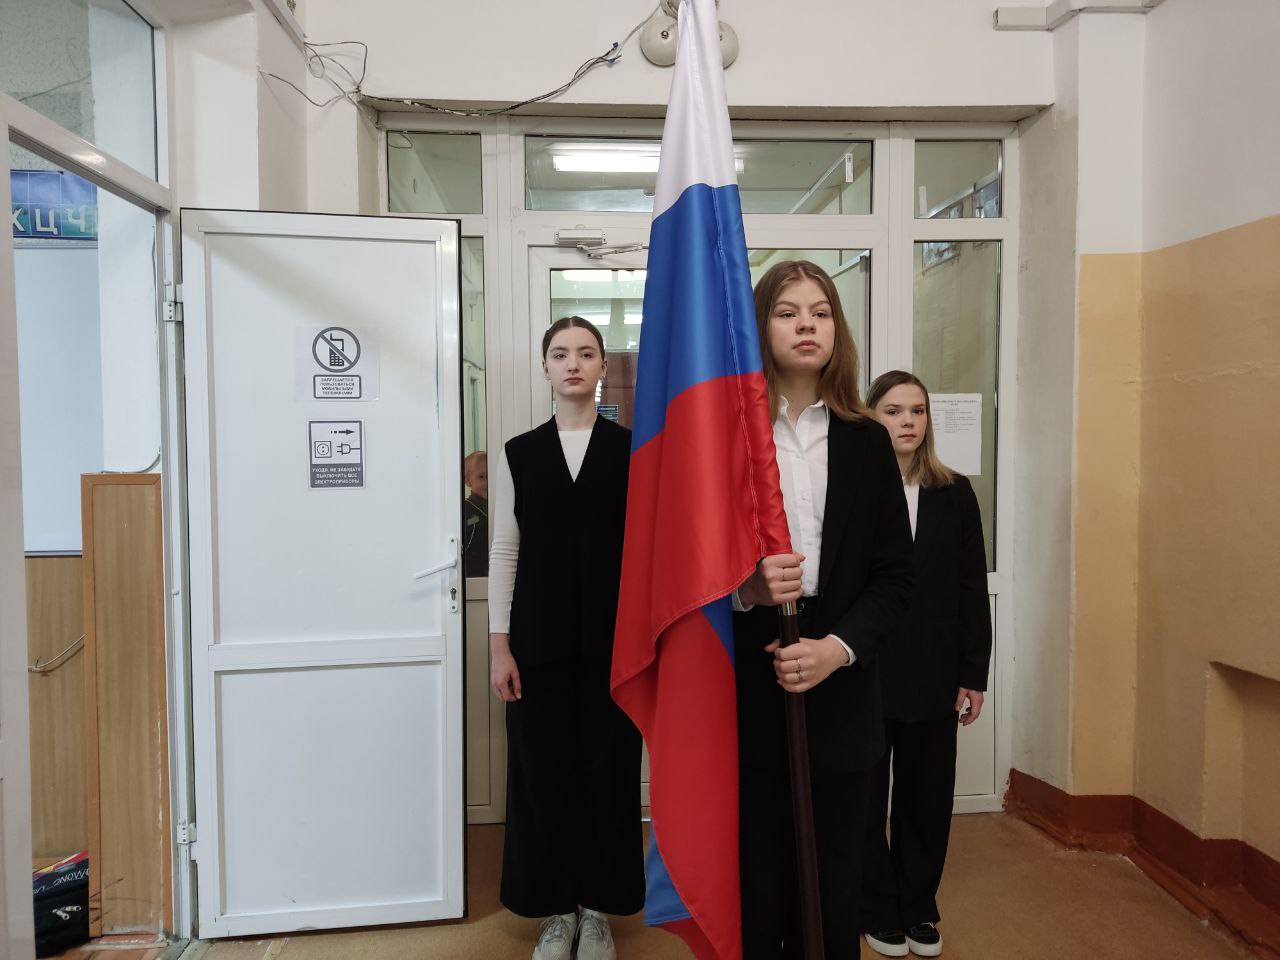 Церемония подъема флага Российской Федерации.  Разговор о важном.